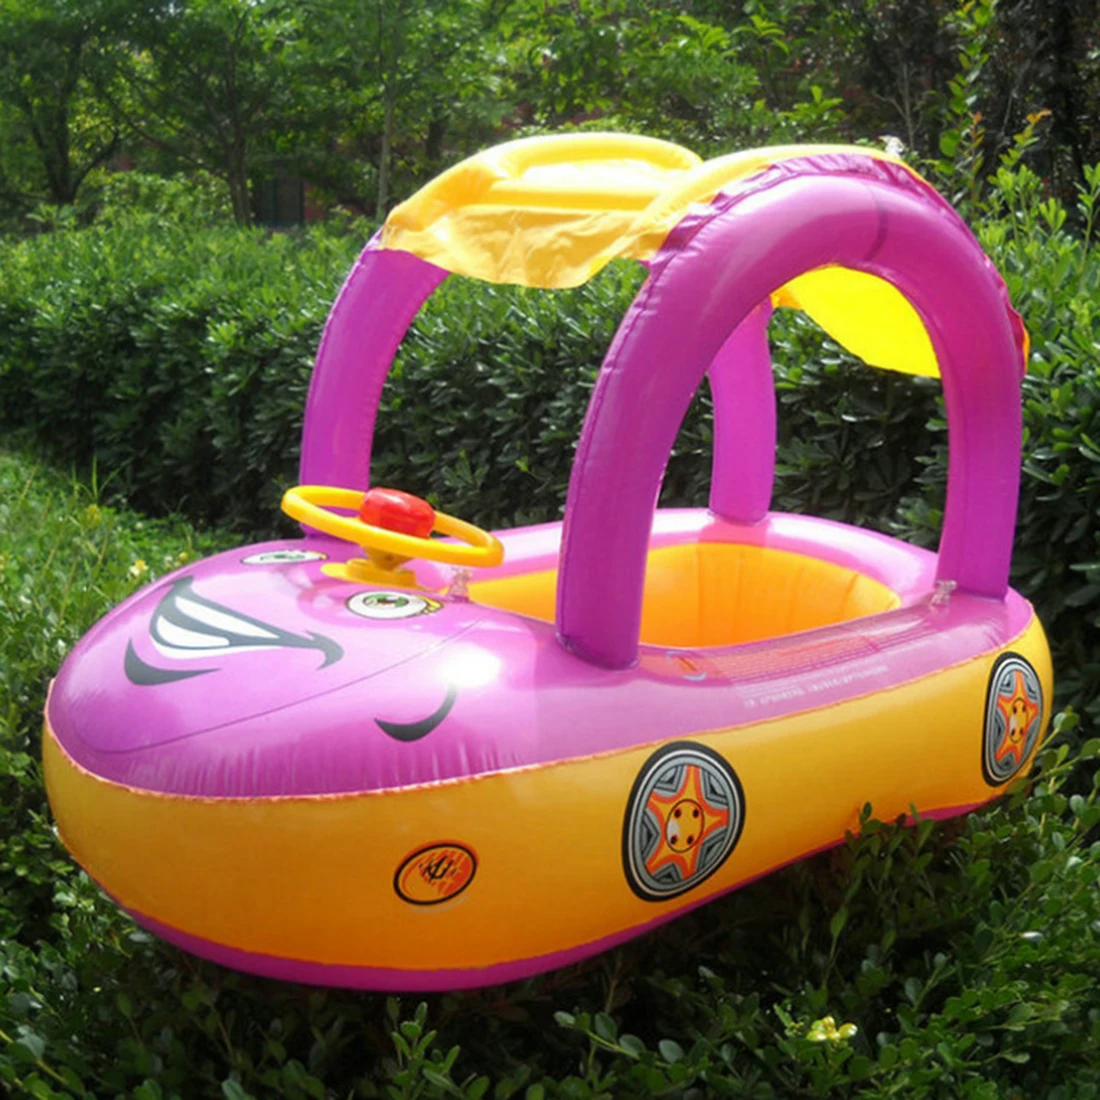 Надувной детский бассейн поплавок безопасности форма автомобиля плавательный круг с козырьком от солнца Зонт игрушки для детей